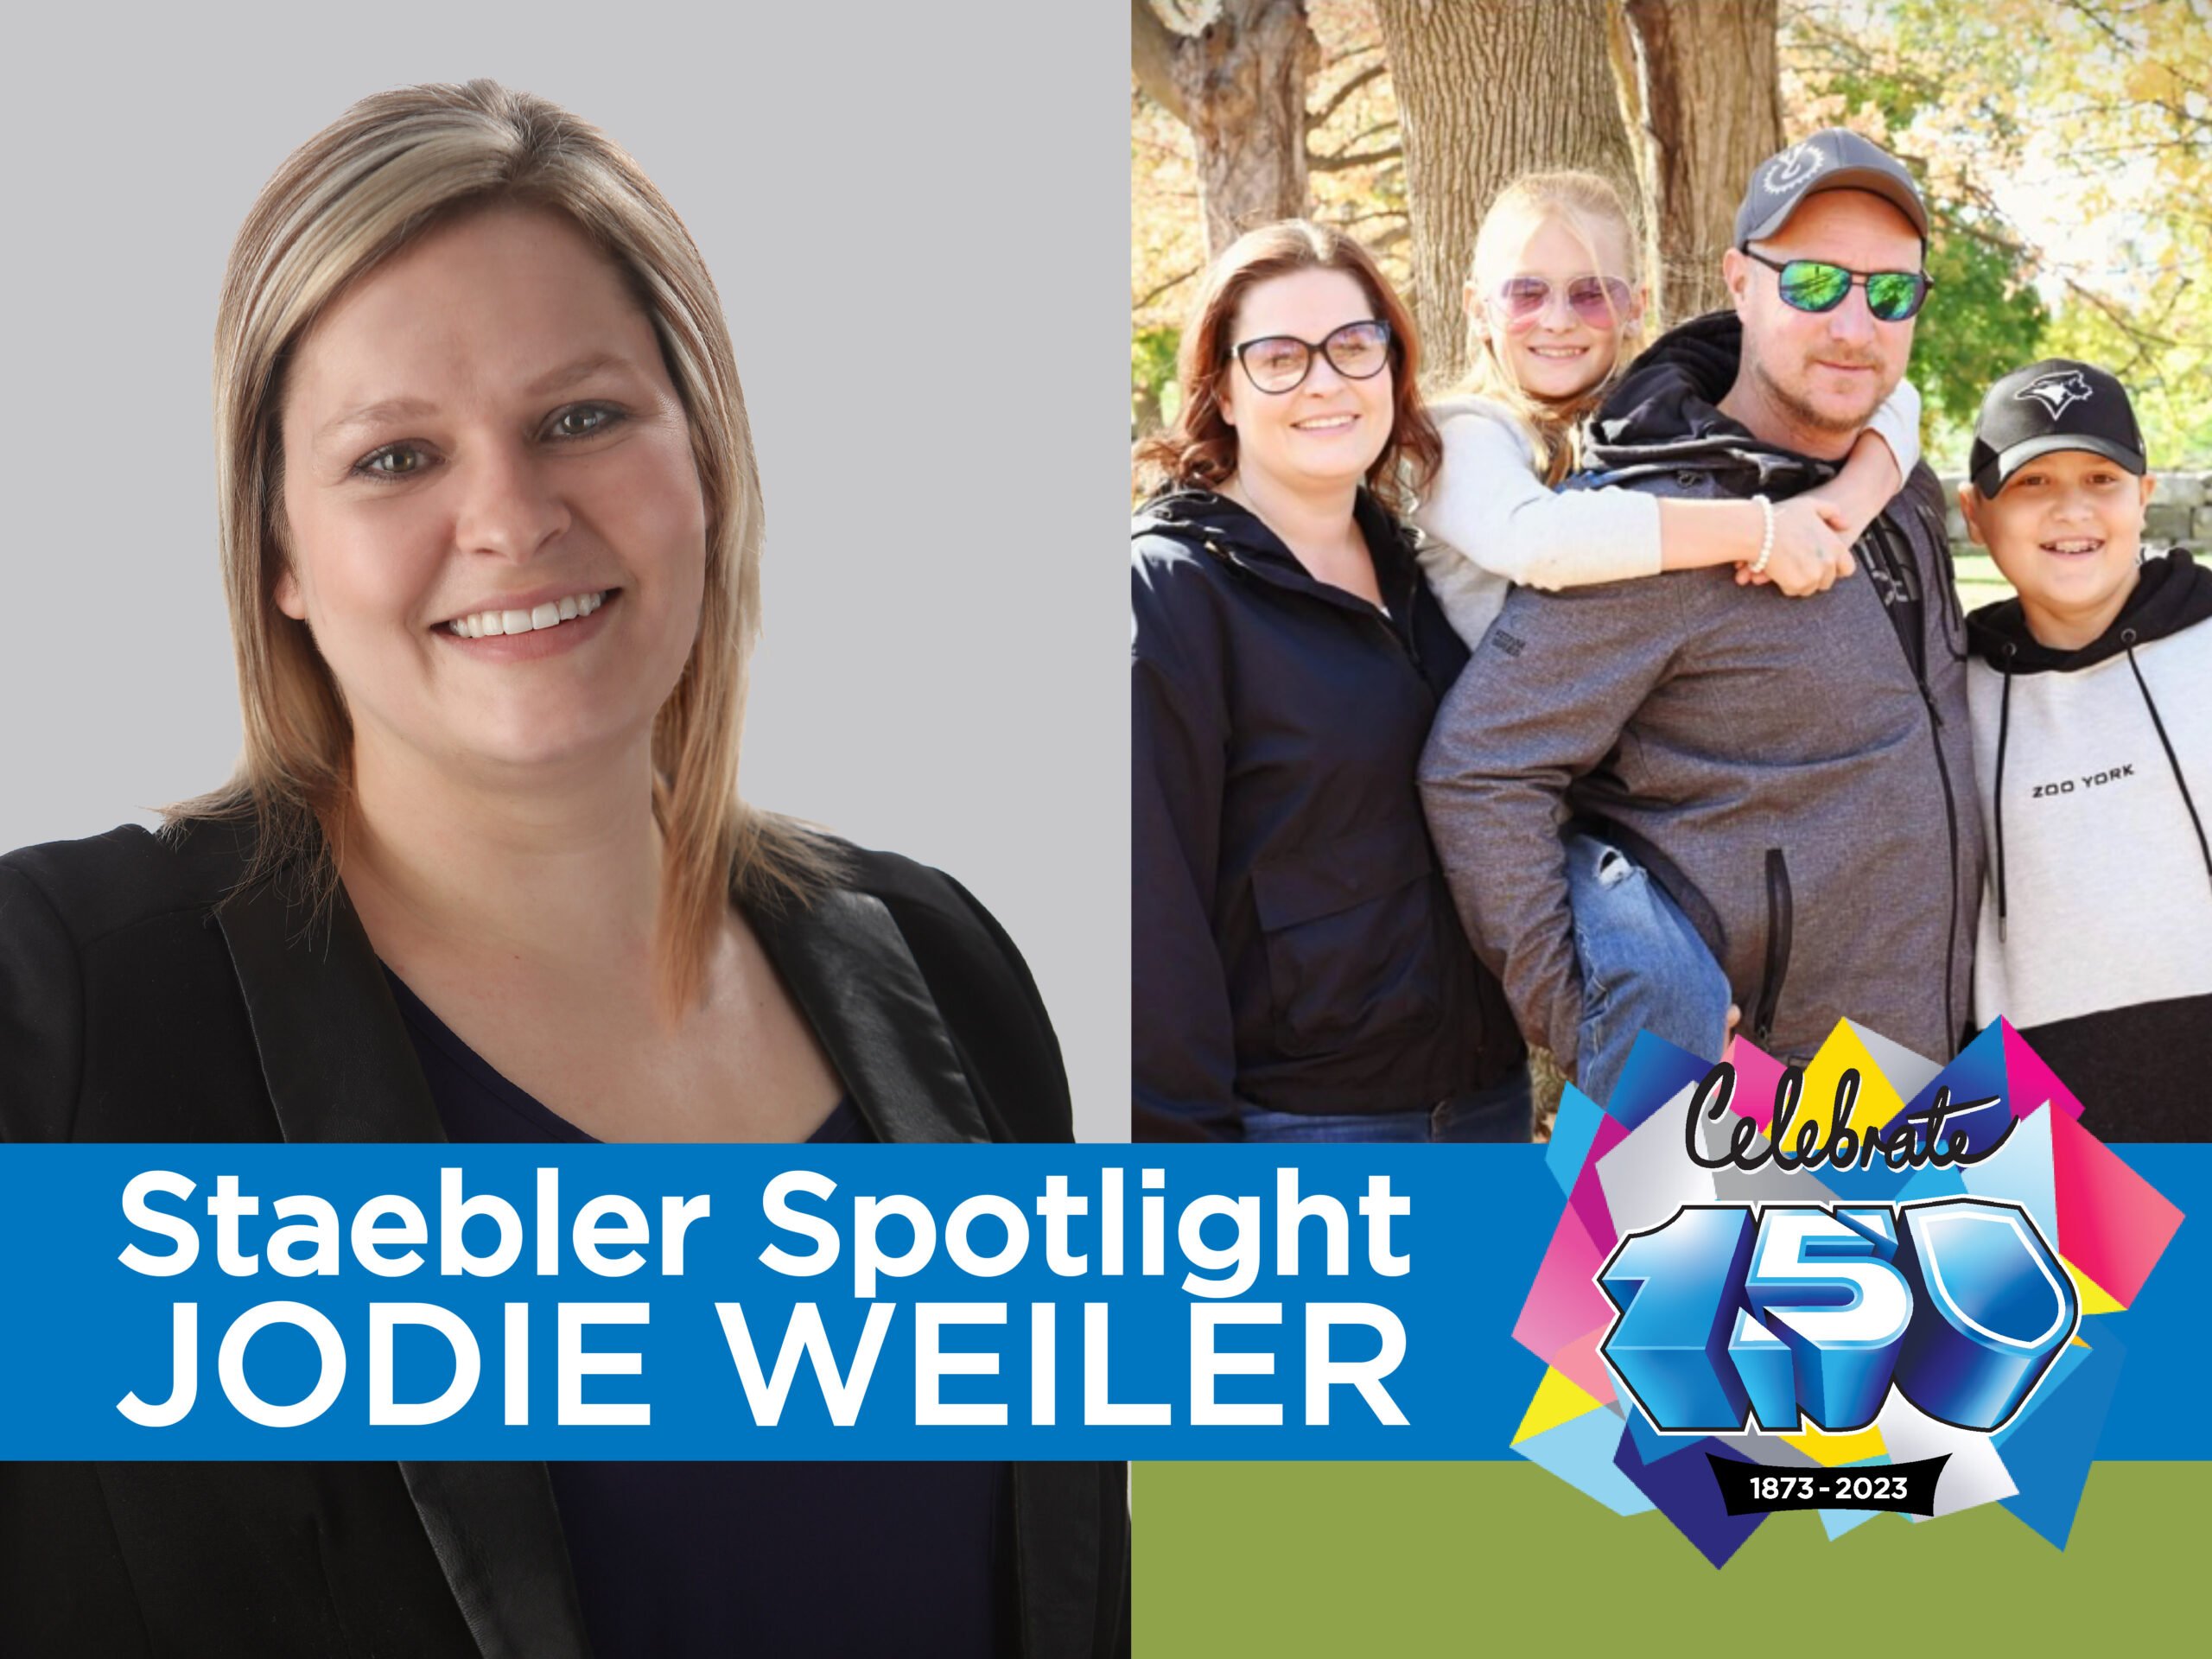 Staebler Spotlight: Jodie Weiler